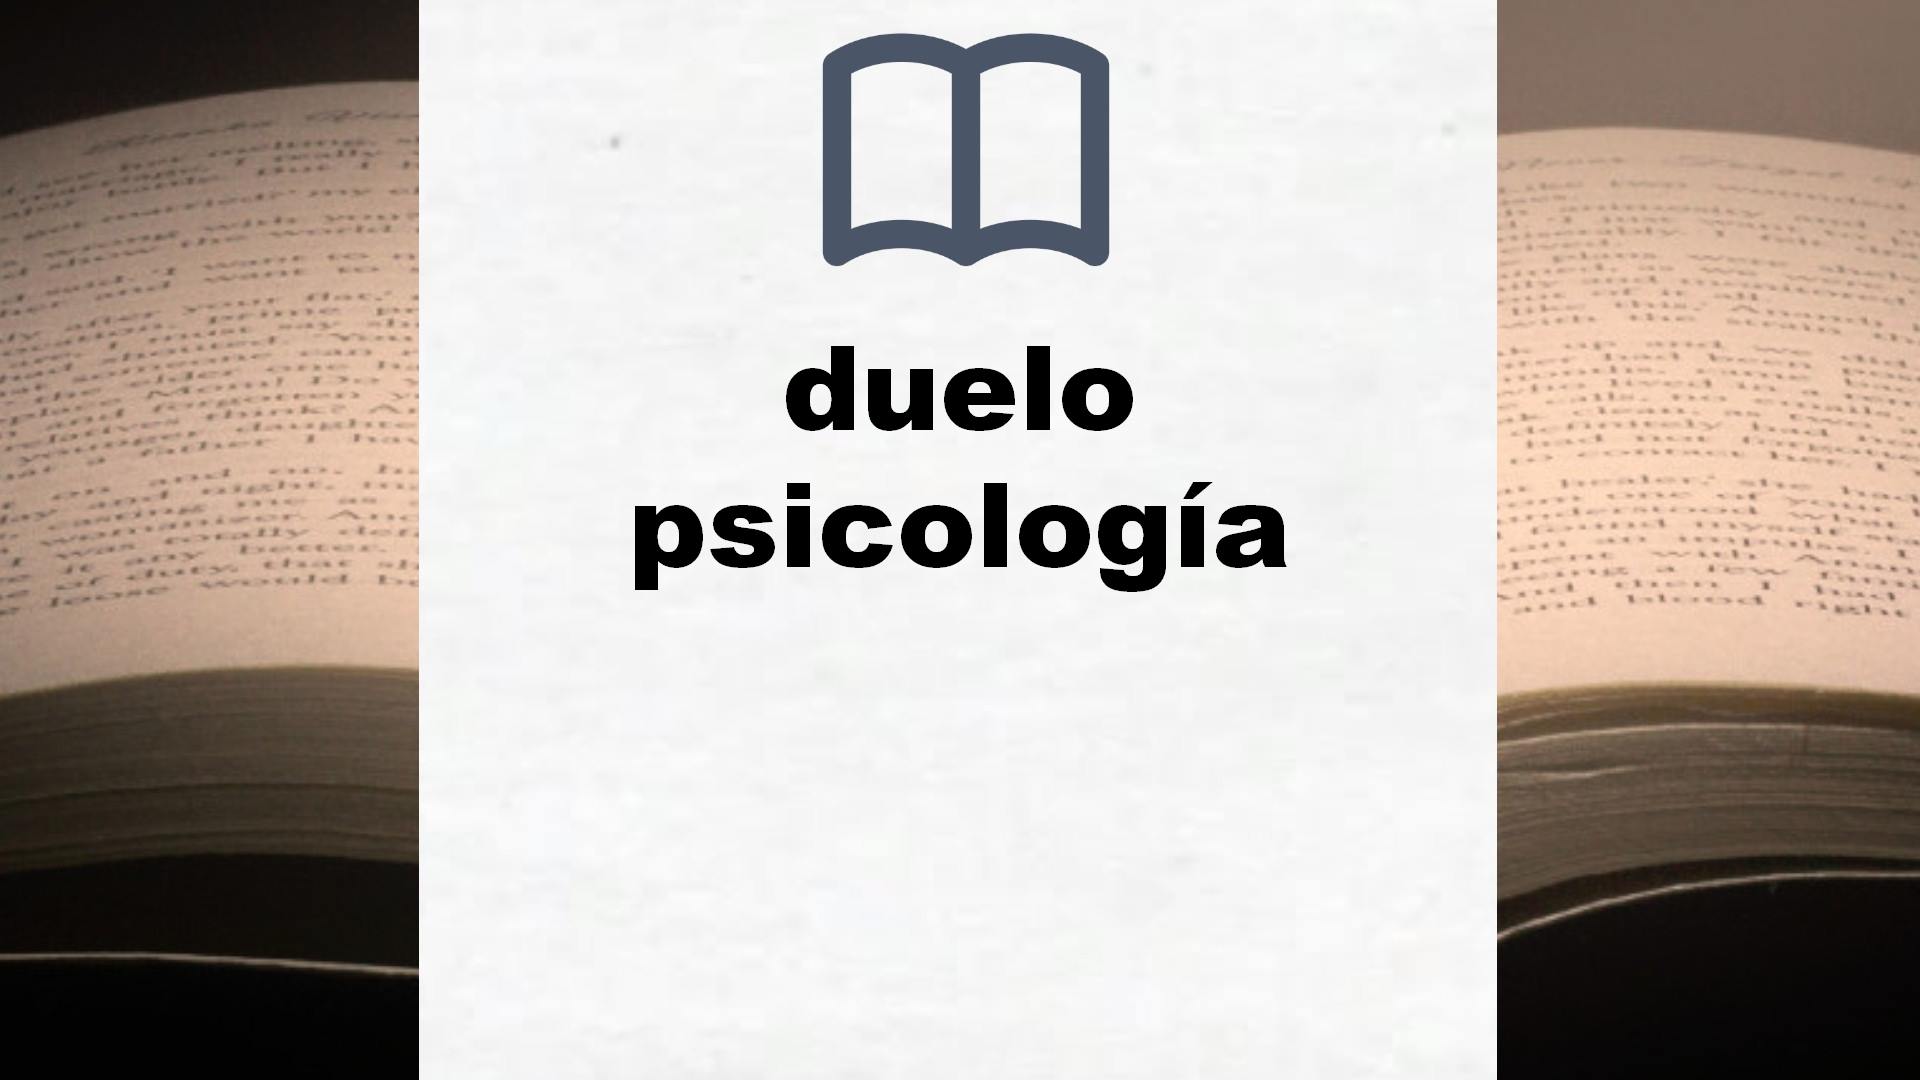 Libros sobre duelo psicología